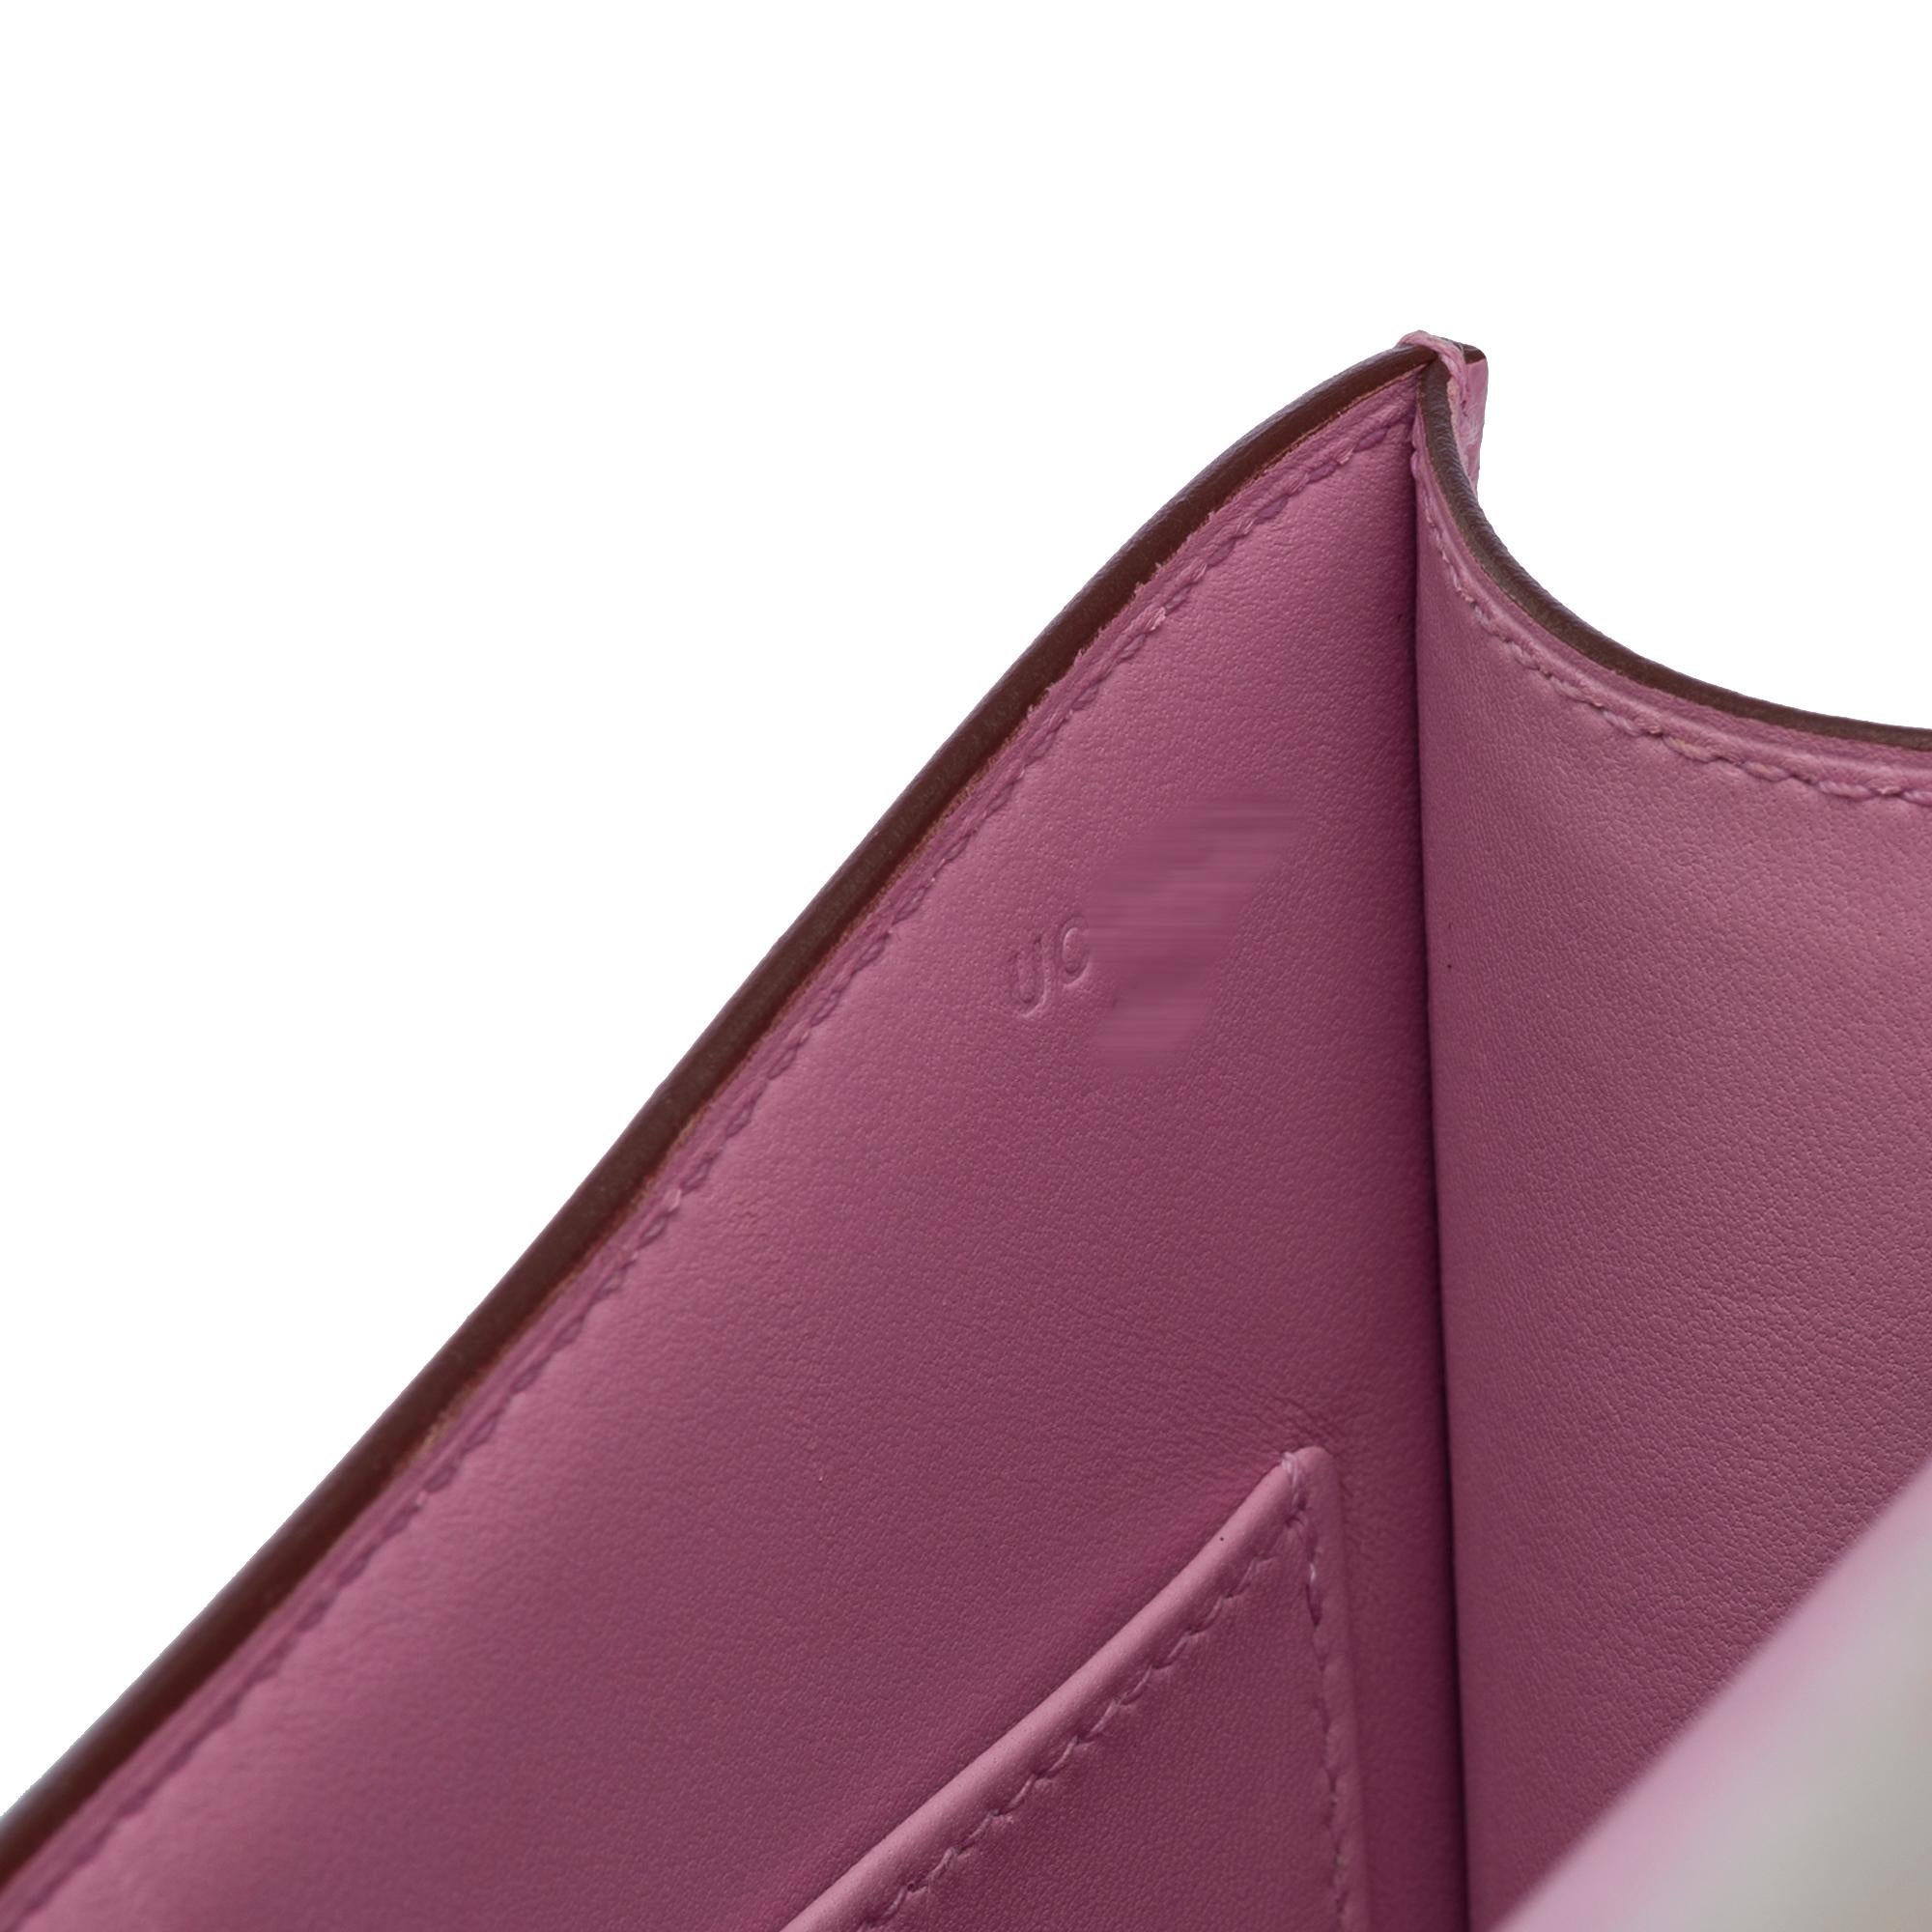 Hermès Constance 23 Mirror shoulder bag in Mauve Sylvestre Epsom leather , SHW 2